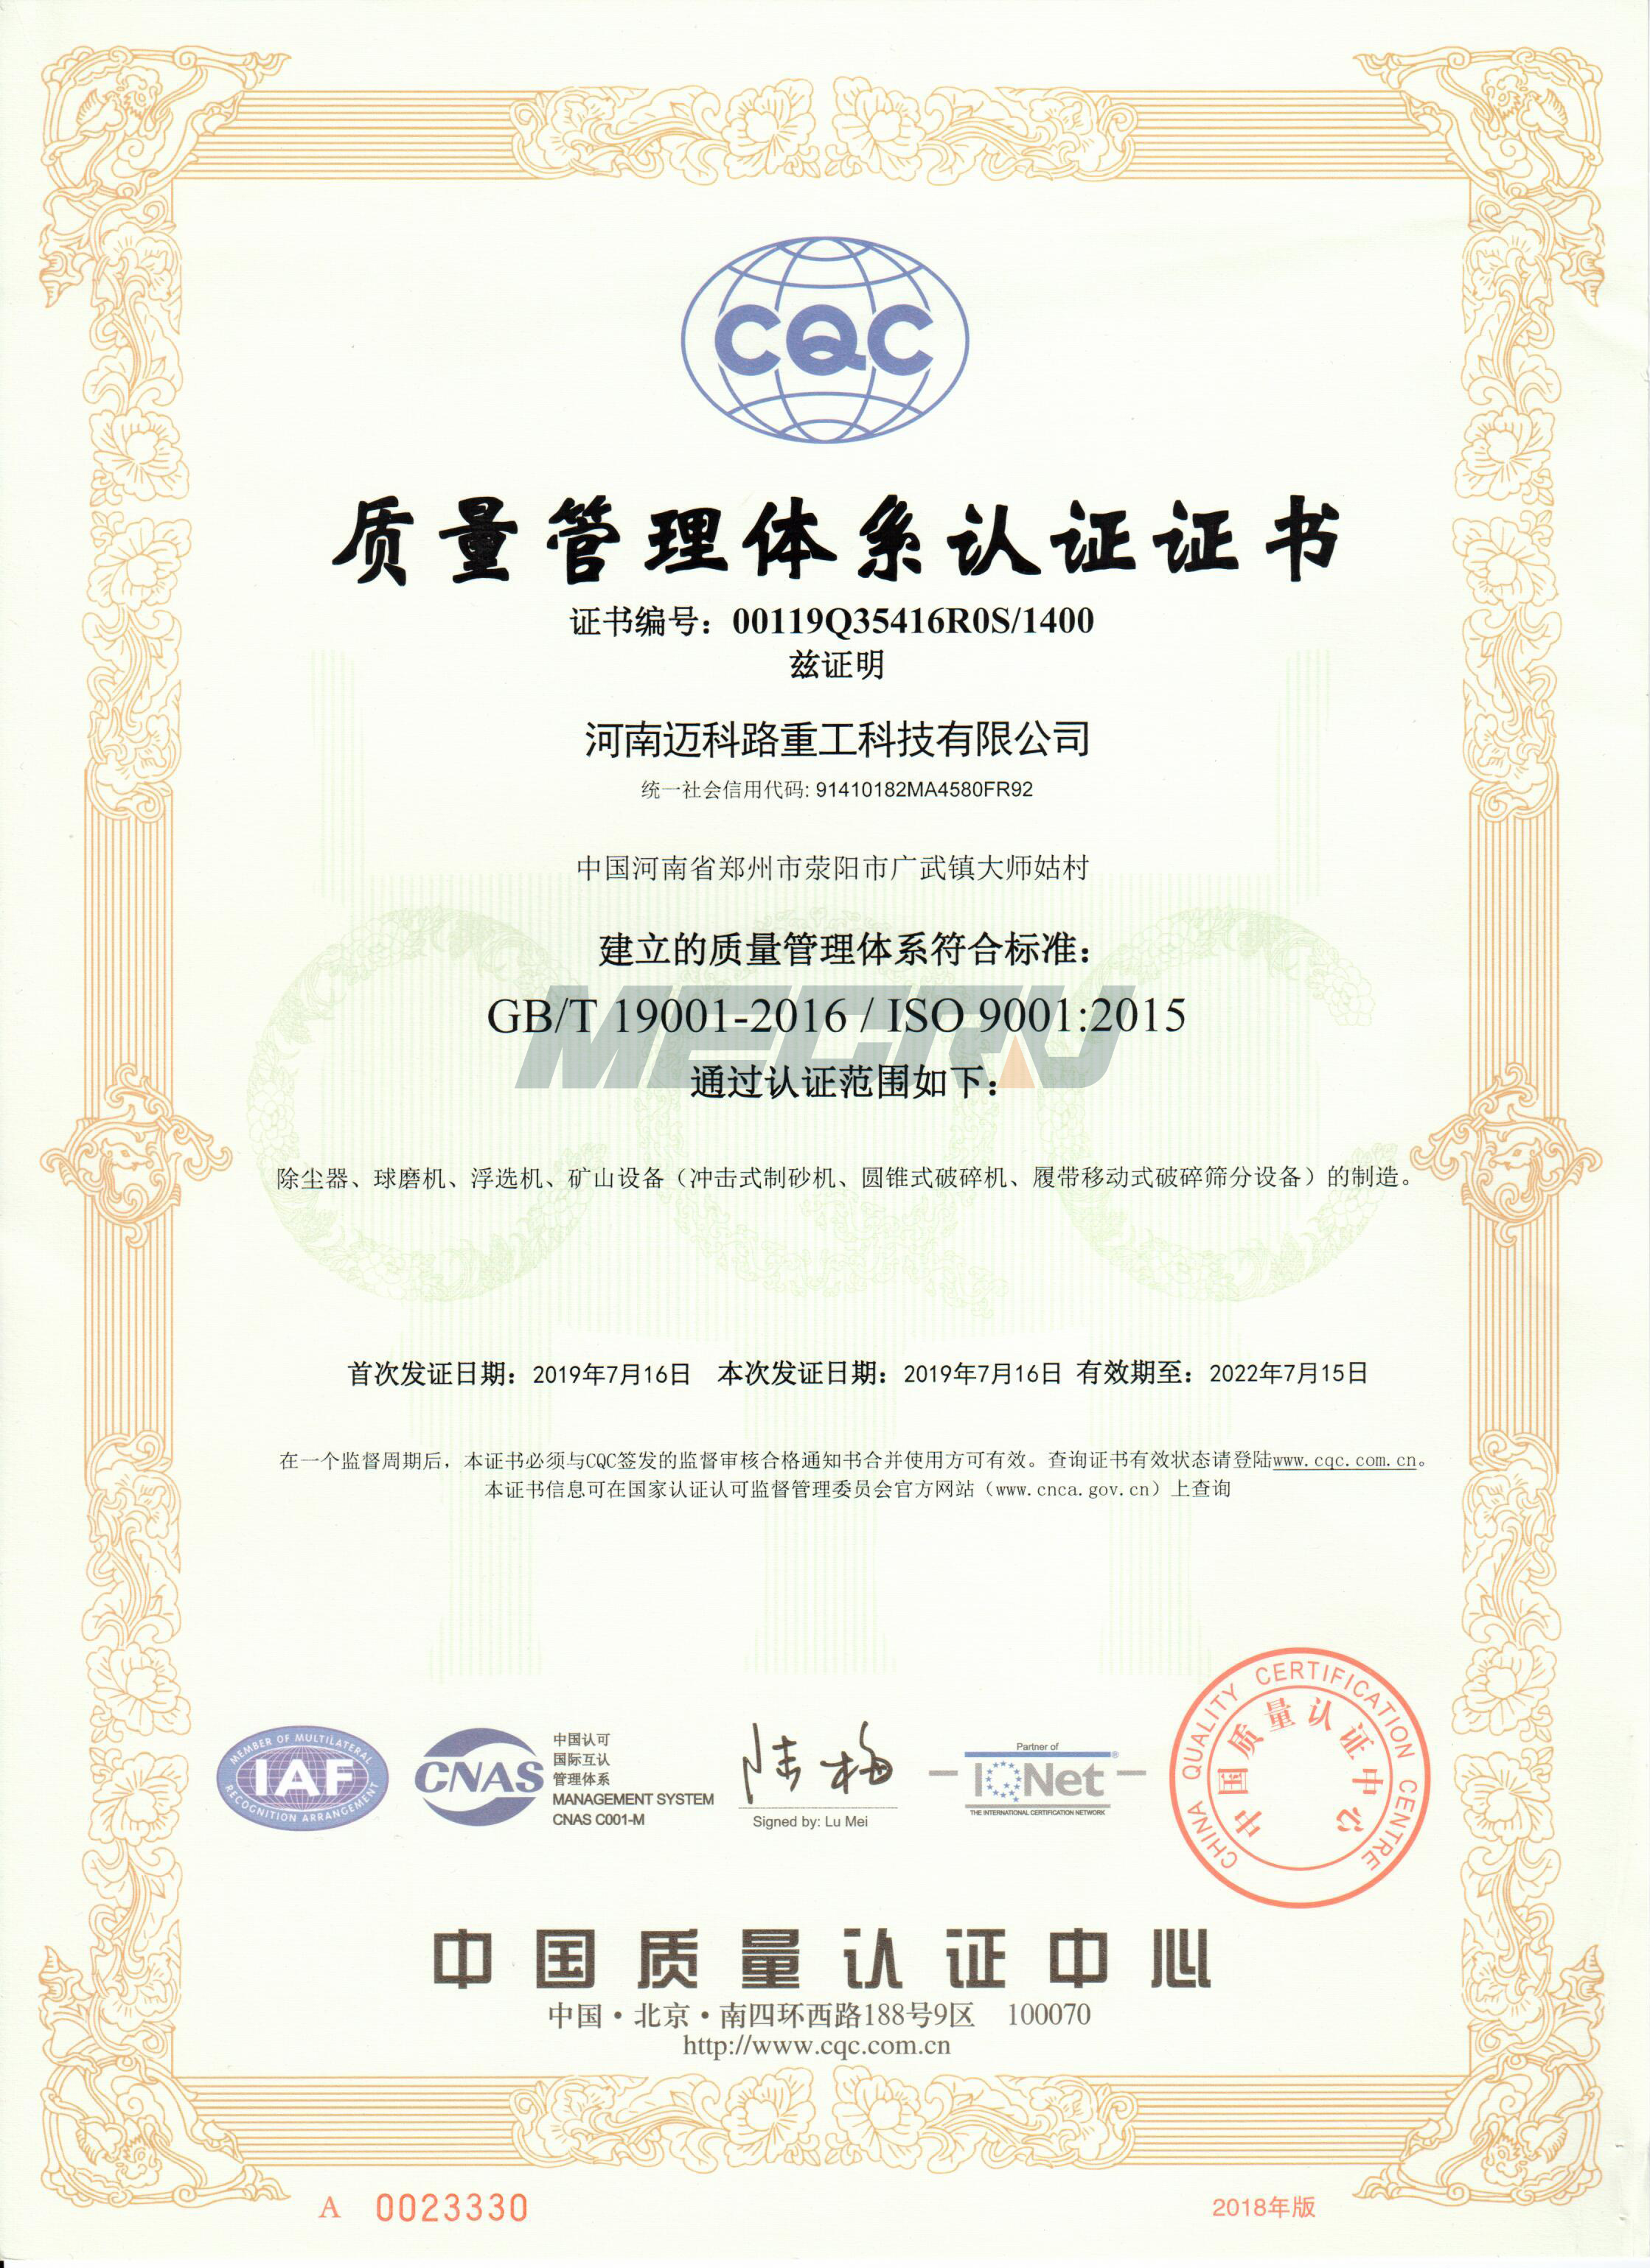 Kvalitātes vadības sistēmas sertifikācija